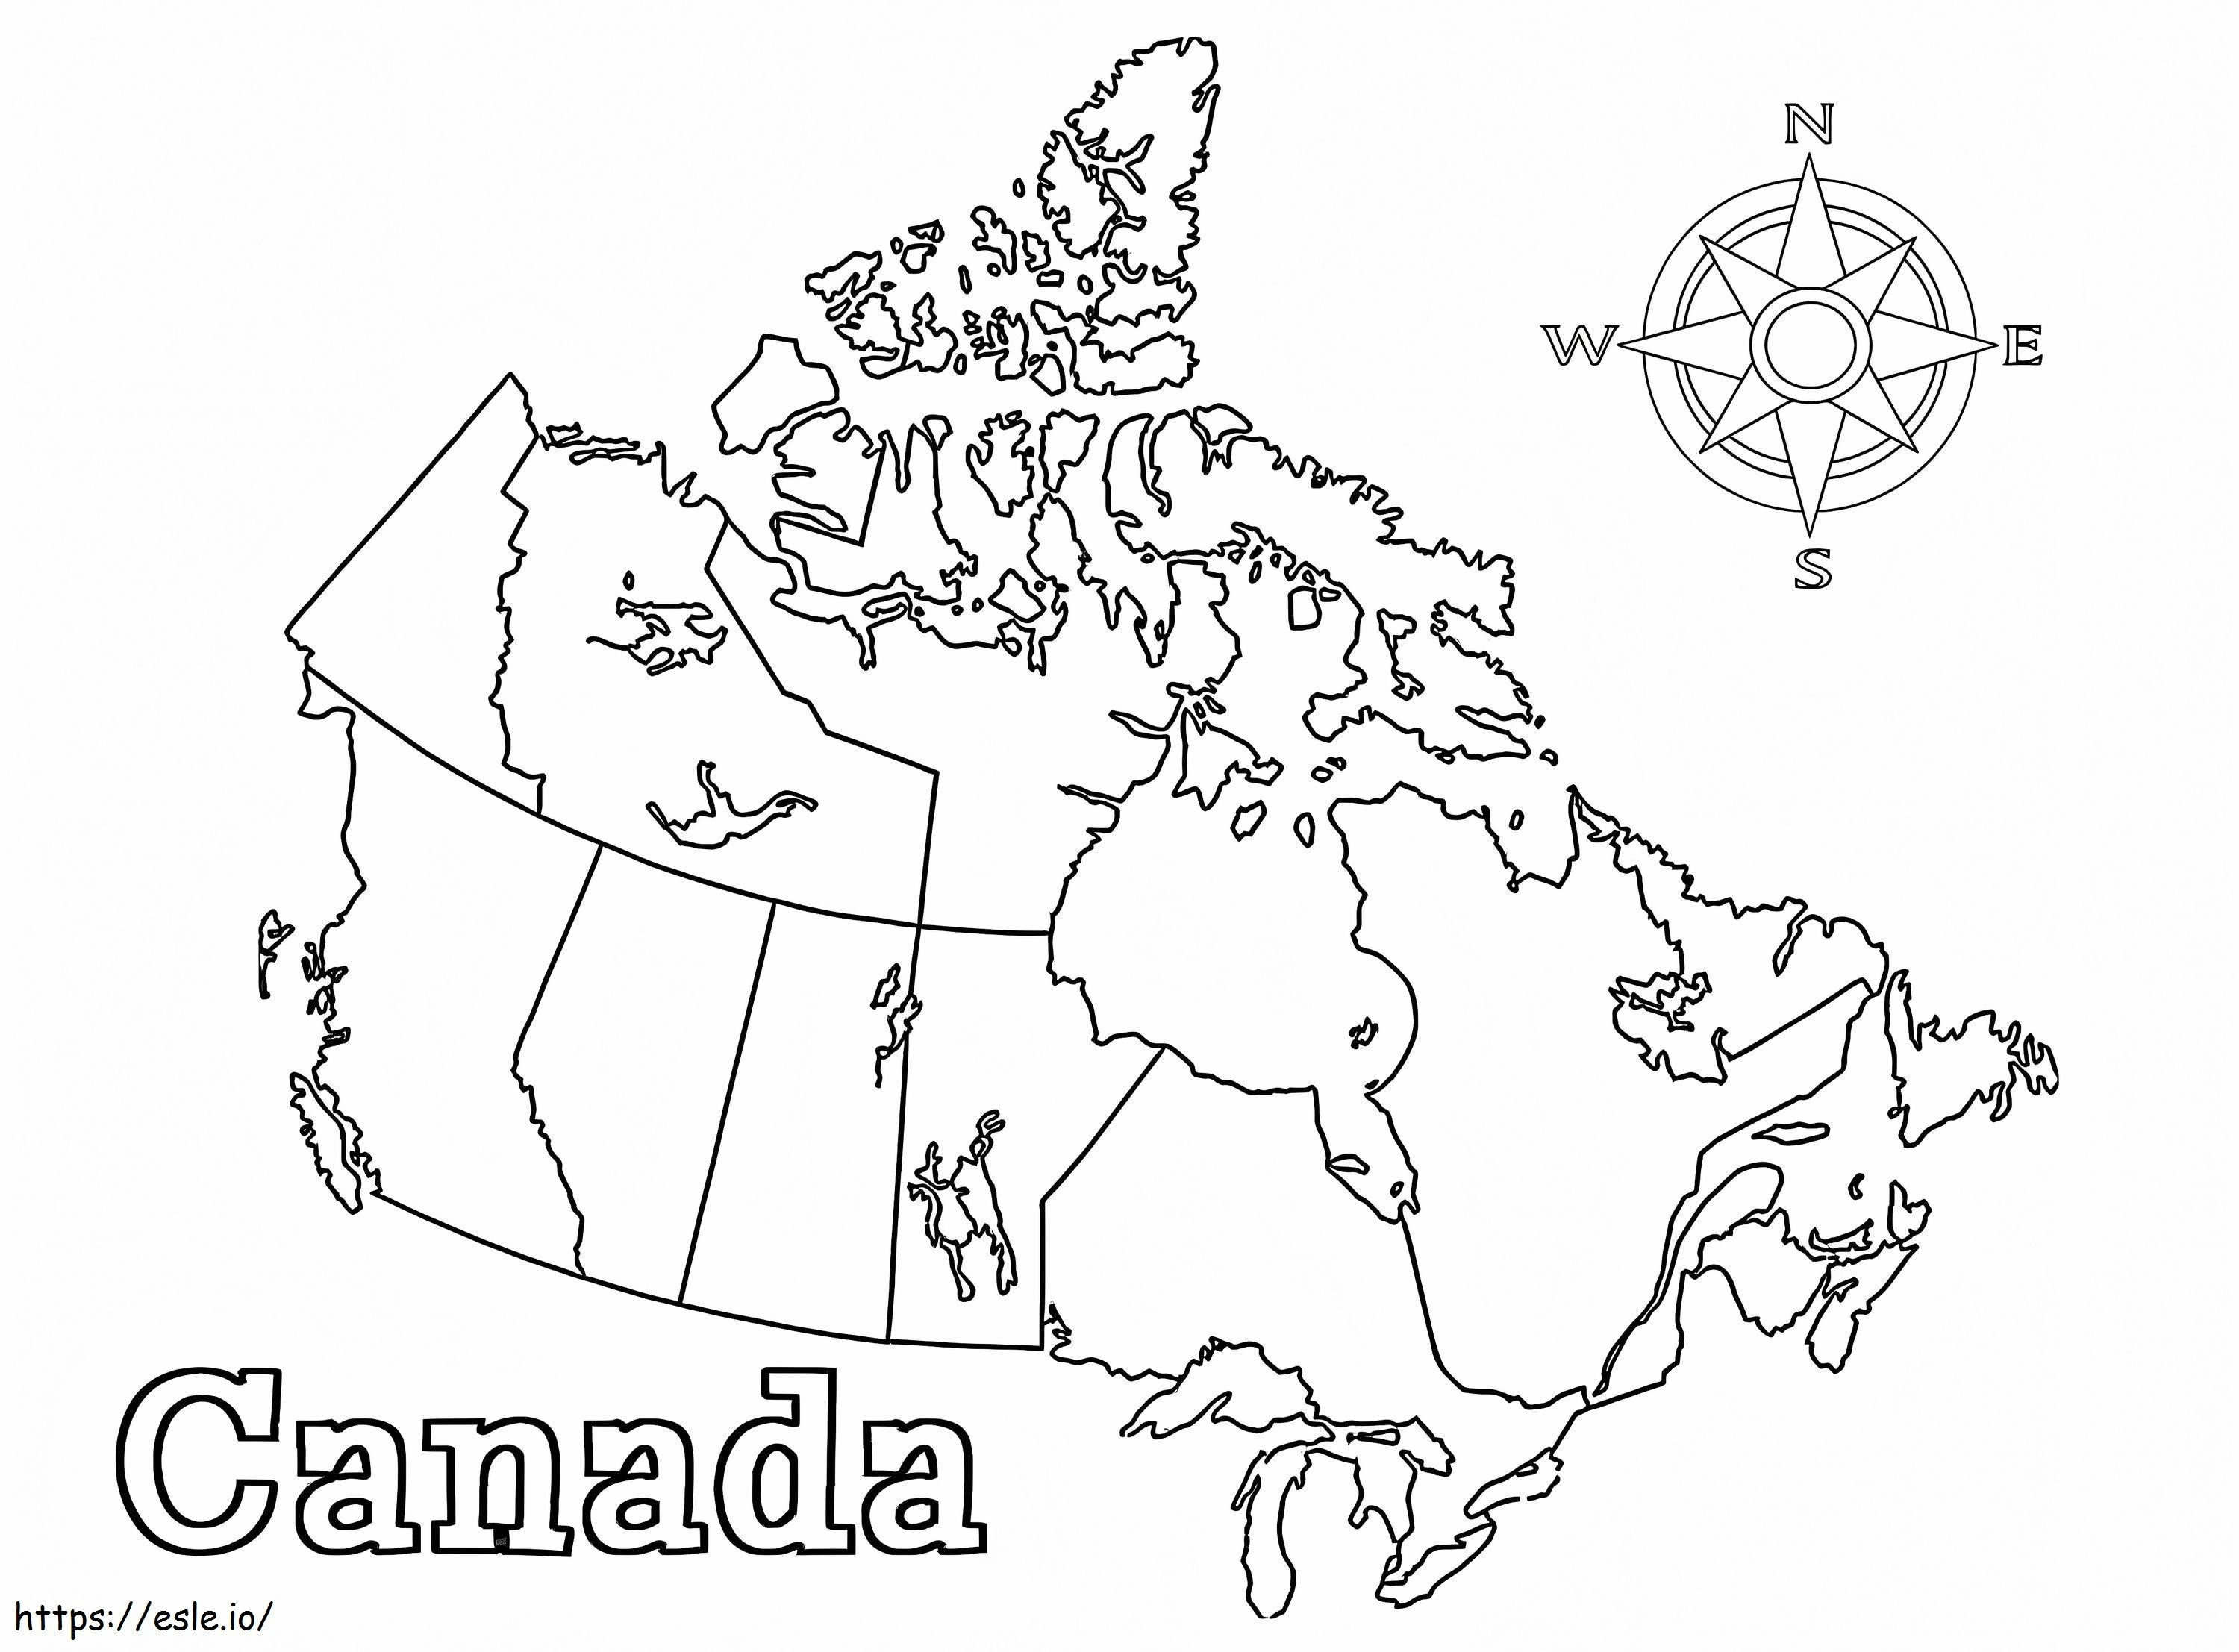 Mapa do Canadá para colorir